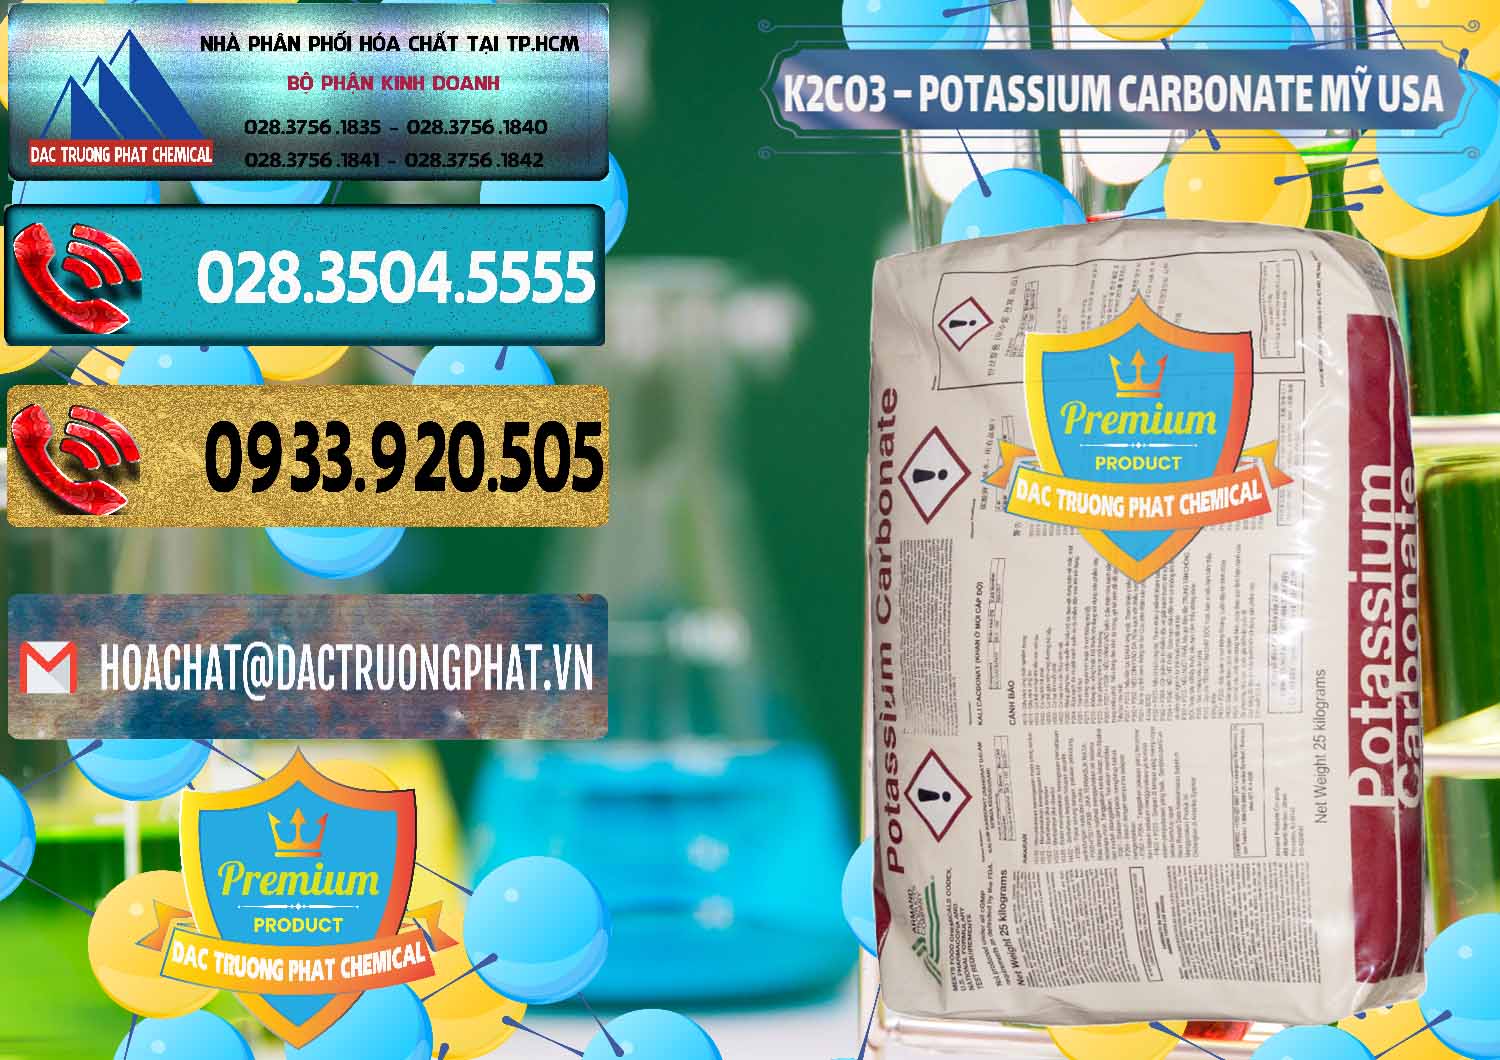 Công ty bán _ cung cấp K2Co3 – Potassium Carbonate Mỹ USA - 0082 - Phân phối _ kinh doanh hóa chất tại TP.HCM - hoachatdetnhuom.com